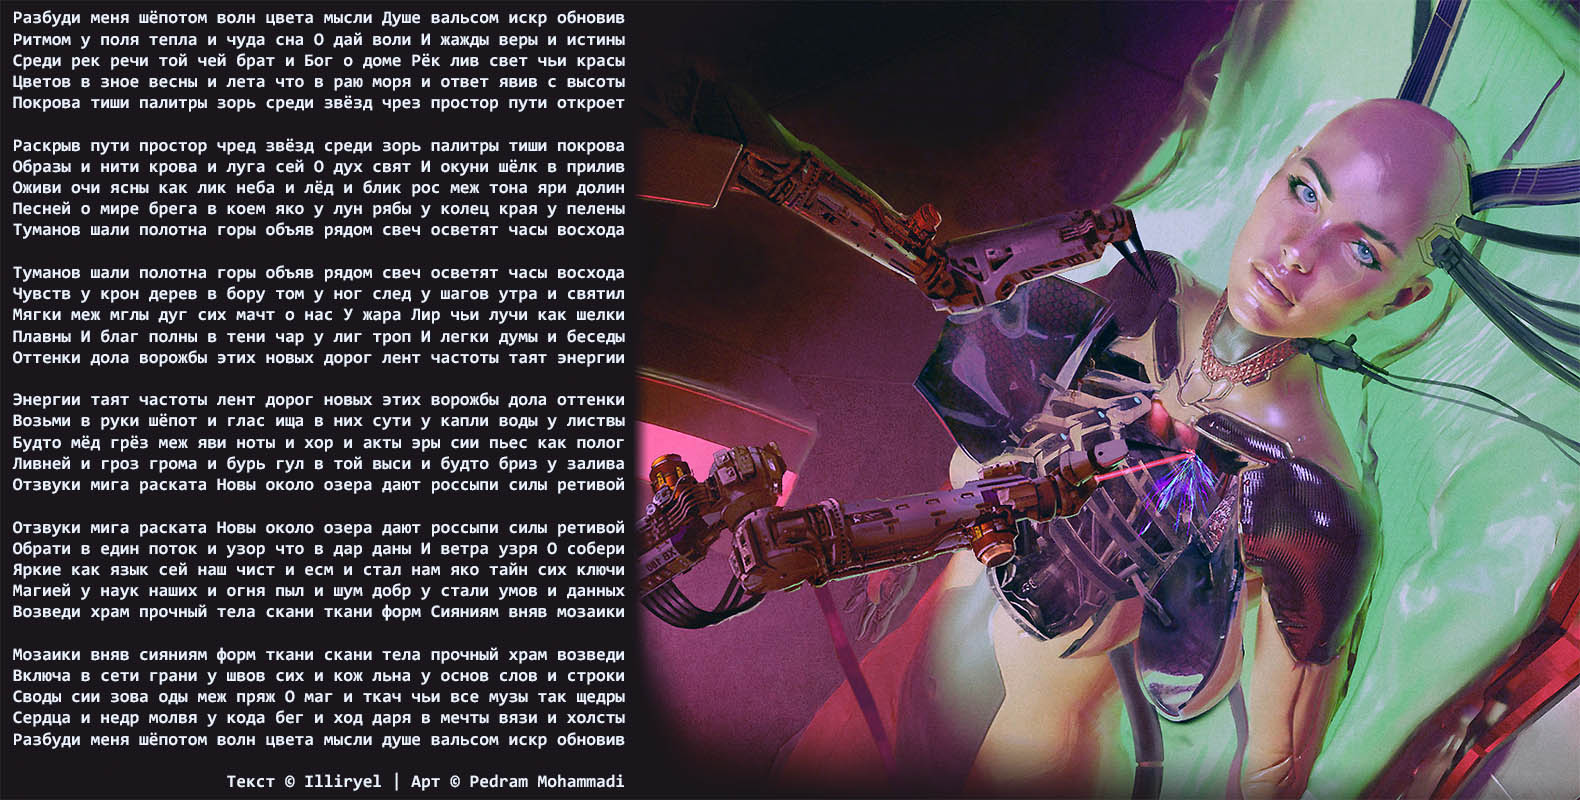 Cyberpunk samurai тексты песен фото 86